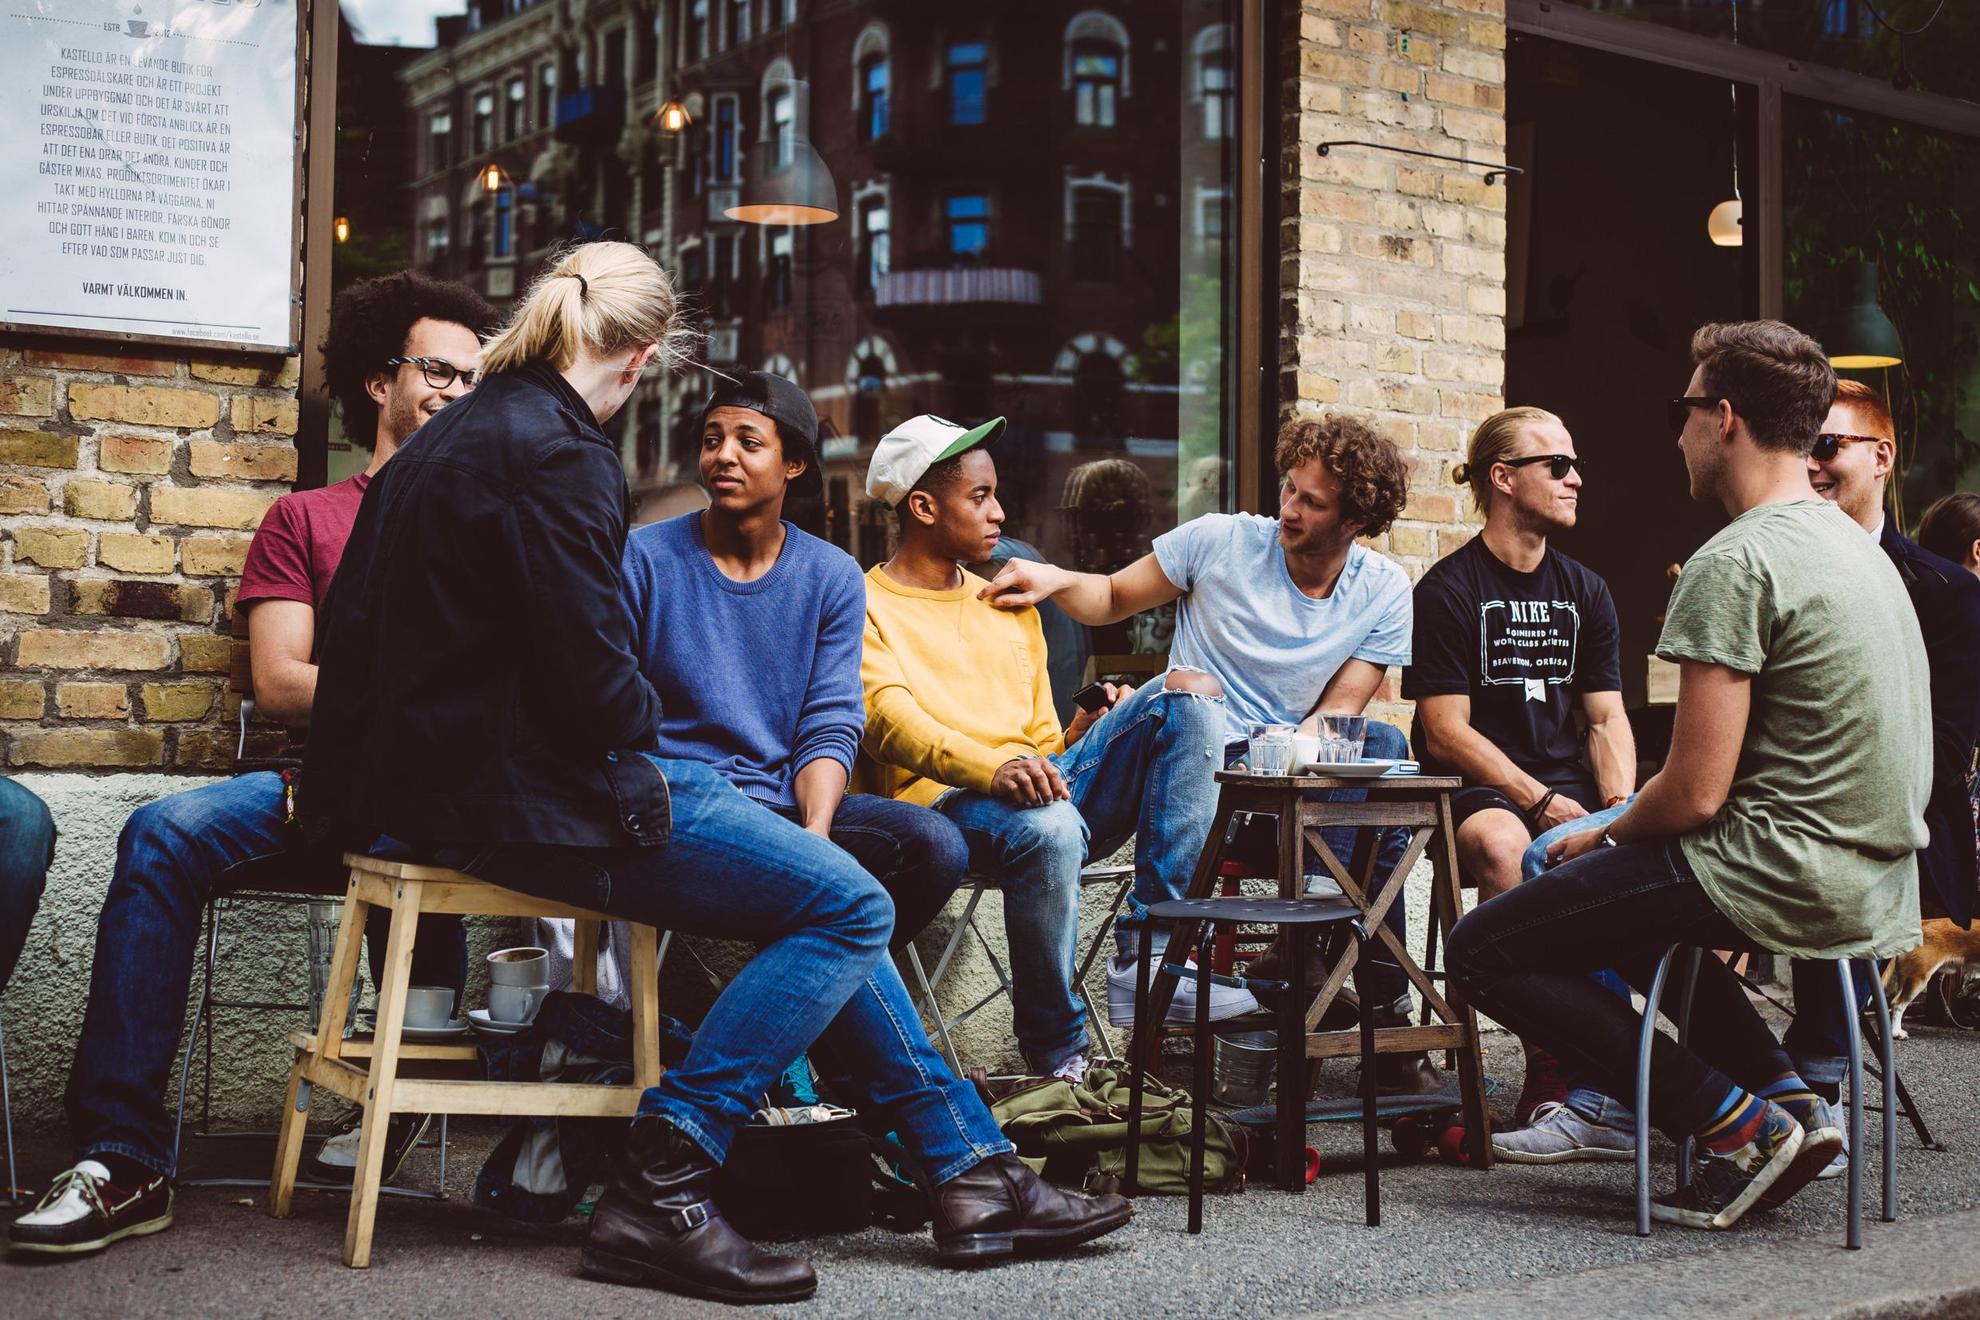 Mensen zitten op krukjes op straat voor een café.